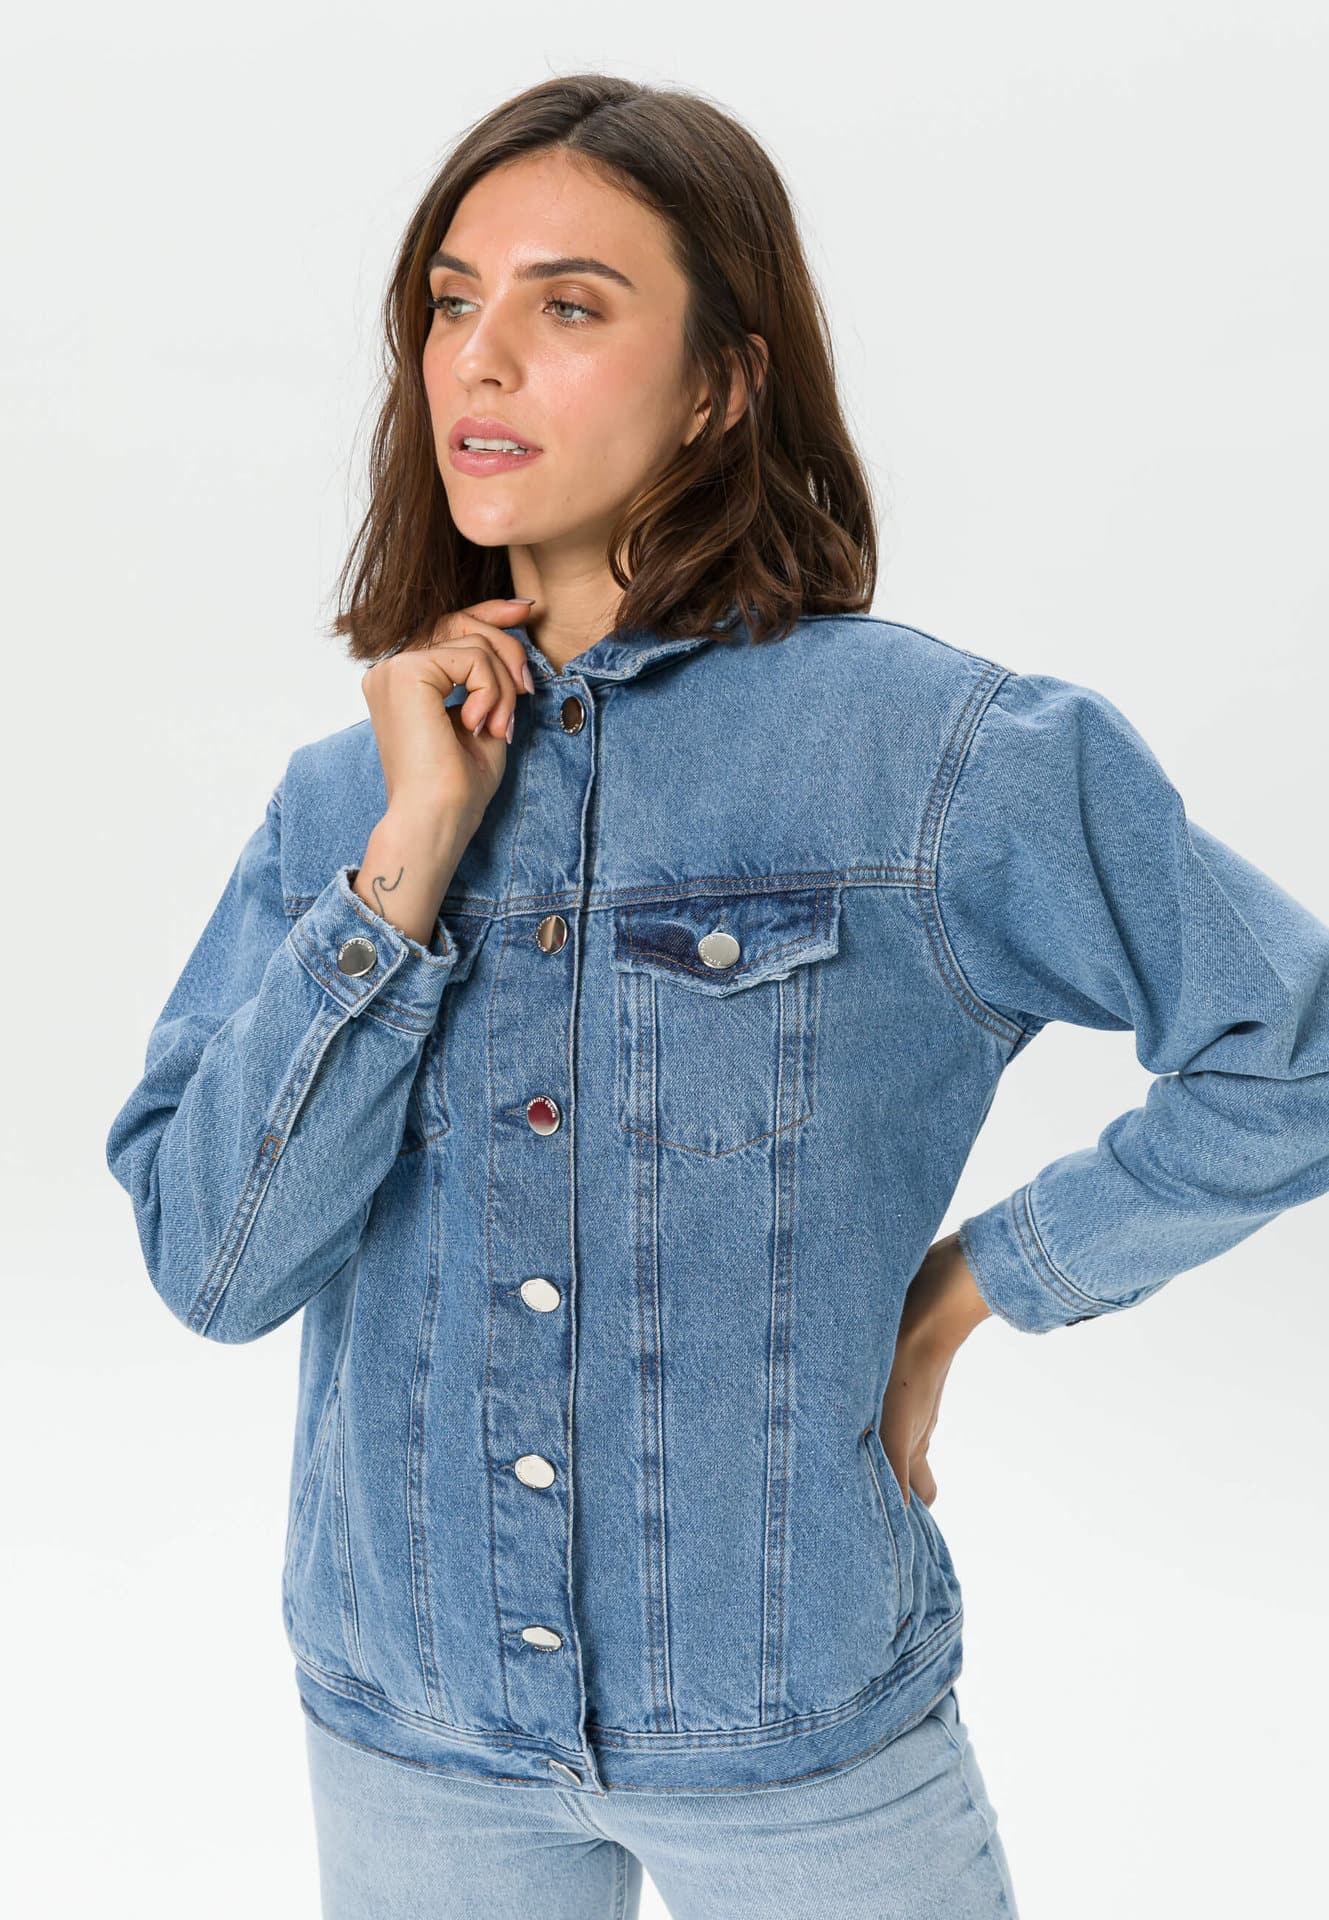 Marketplace Urbankissed - - Wash | Women Denim Fashion Light Jacket Oversized